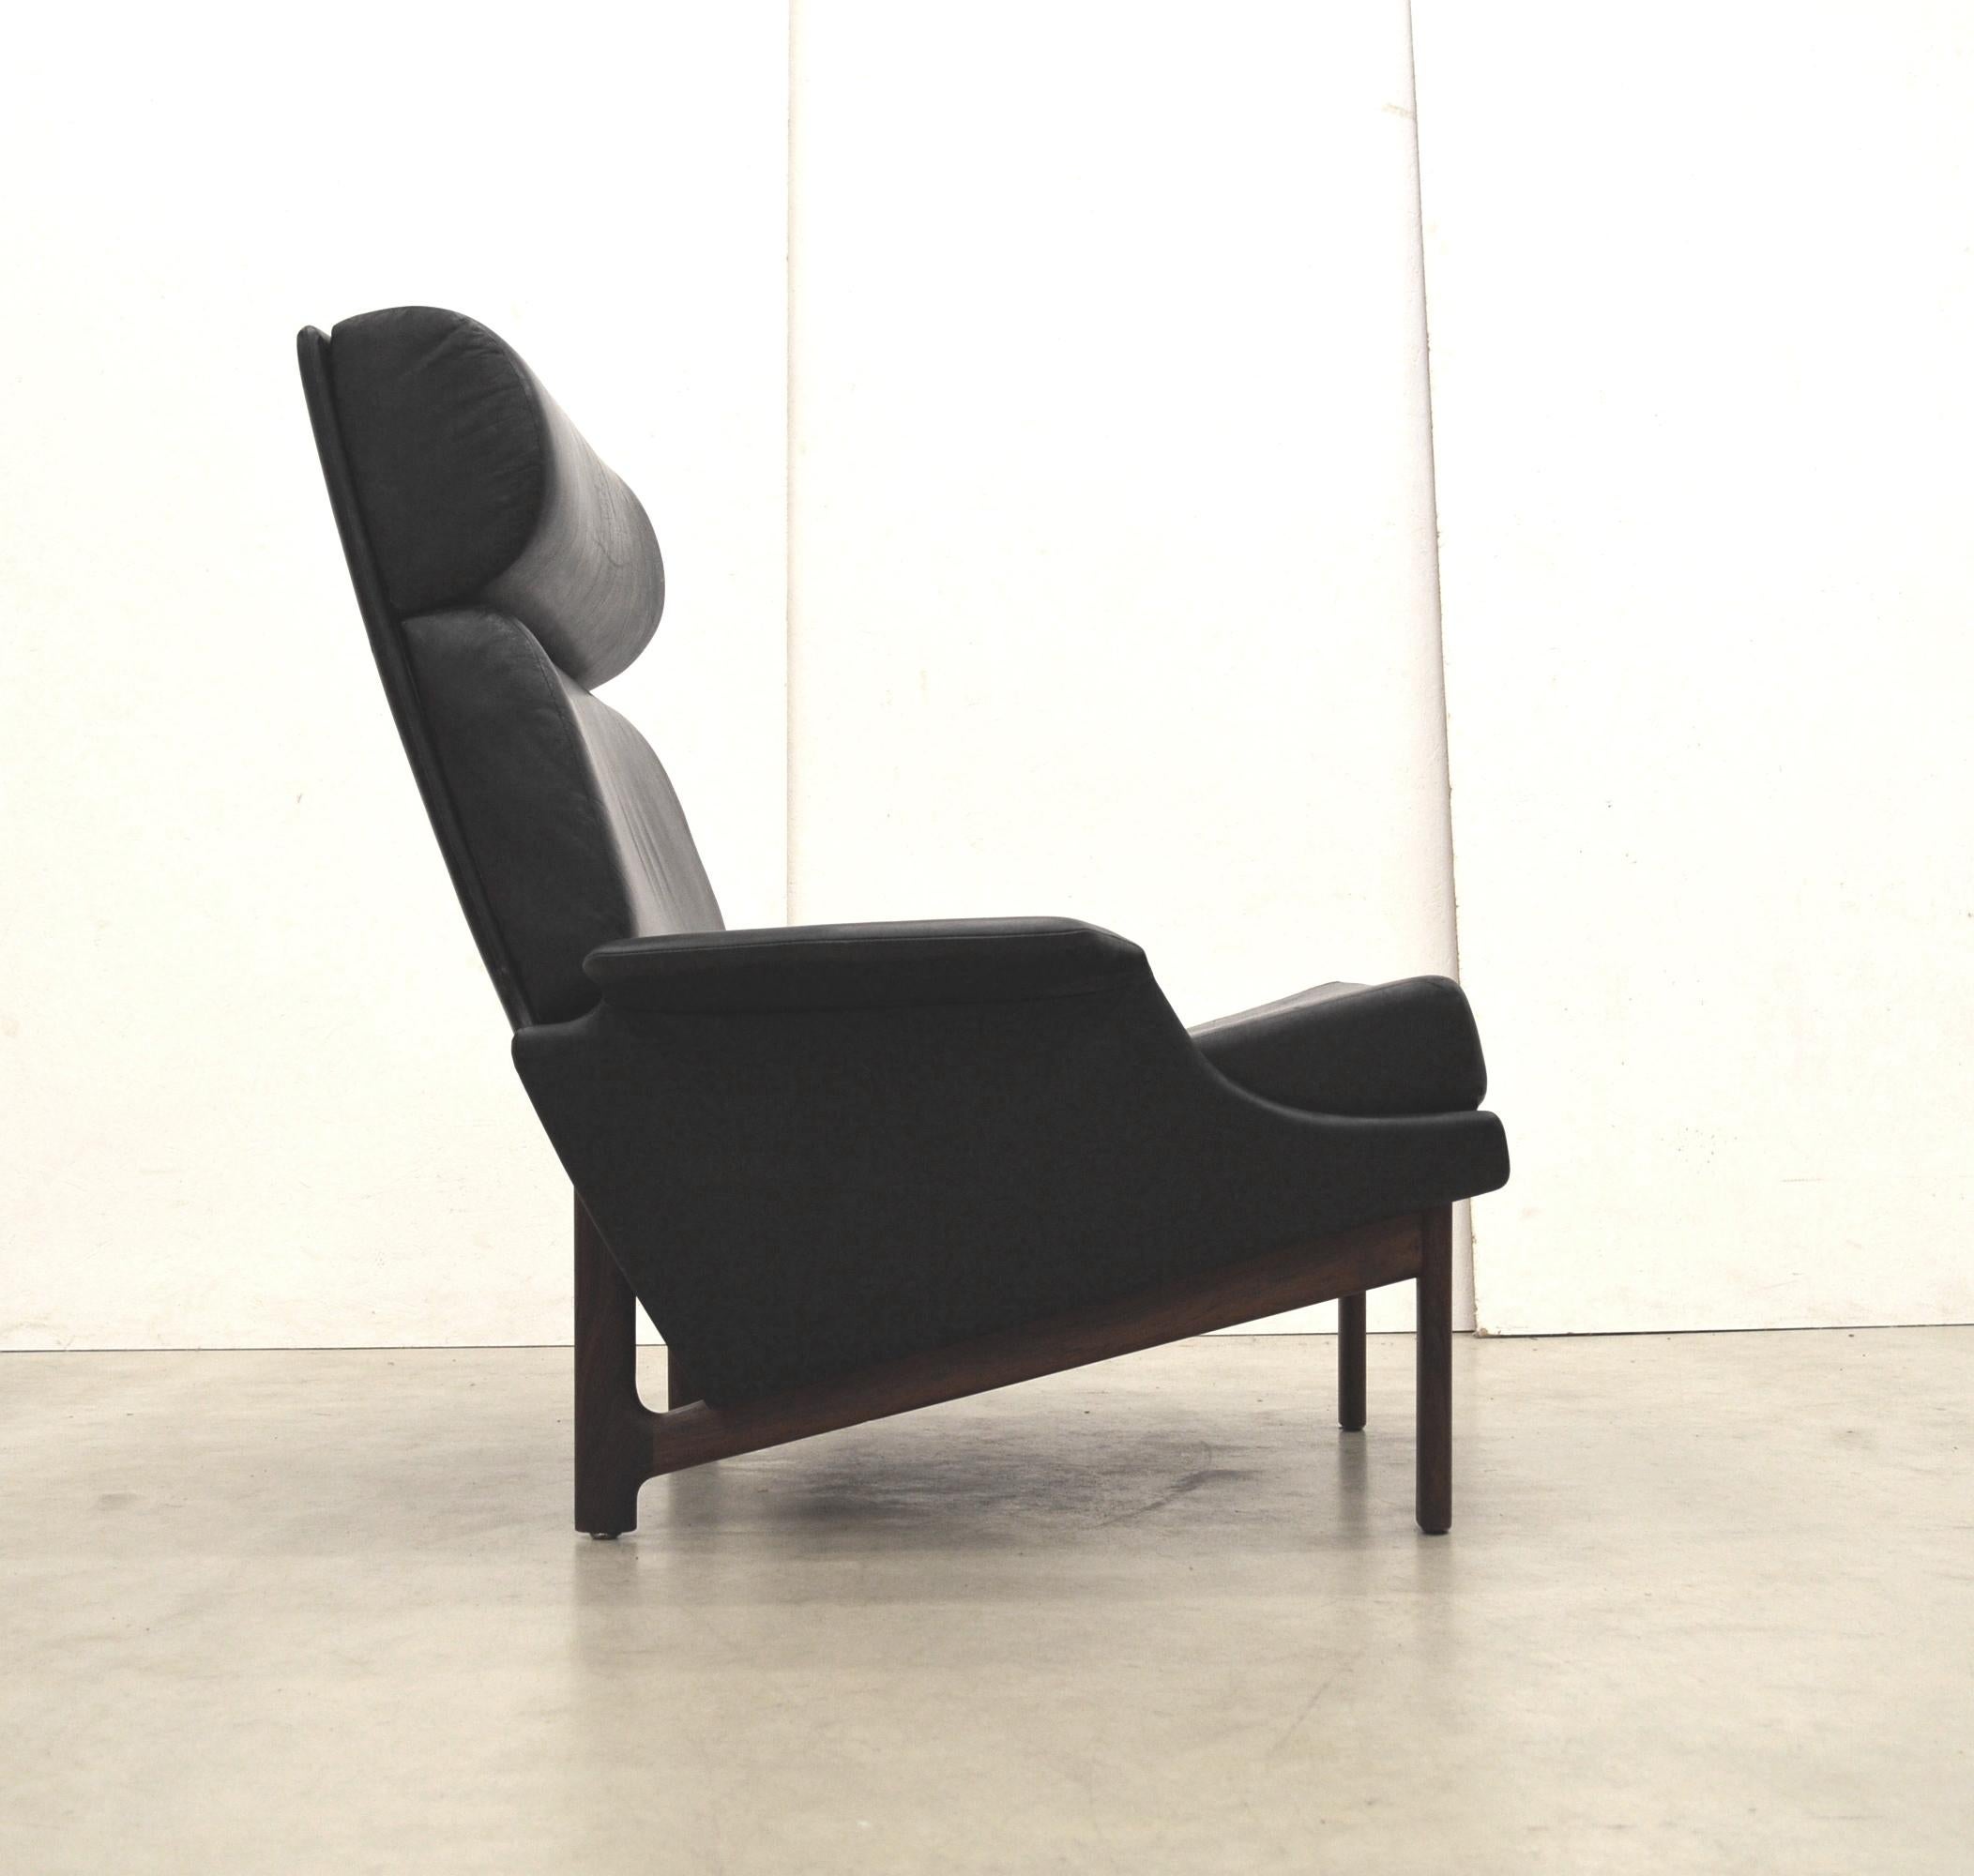 Seltener Adam-Stuhl von IB Kofod Larsen für Mogens Kold Mobelfabrik Dänemark.
Er wurde 1958 entworfen und Anfang der 1960er Jahre hergestellt.

Frühe Ausgabe mit wundervollem schwarzem Lederbezug und tollem Palisanderholzsockel.
Zeitloses und